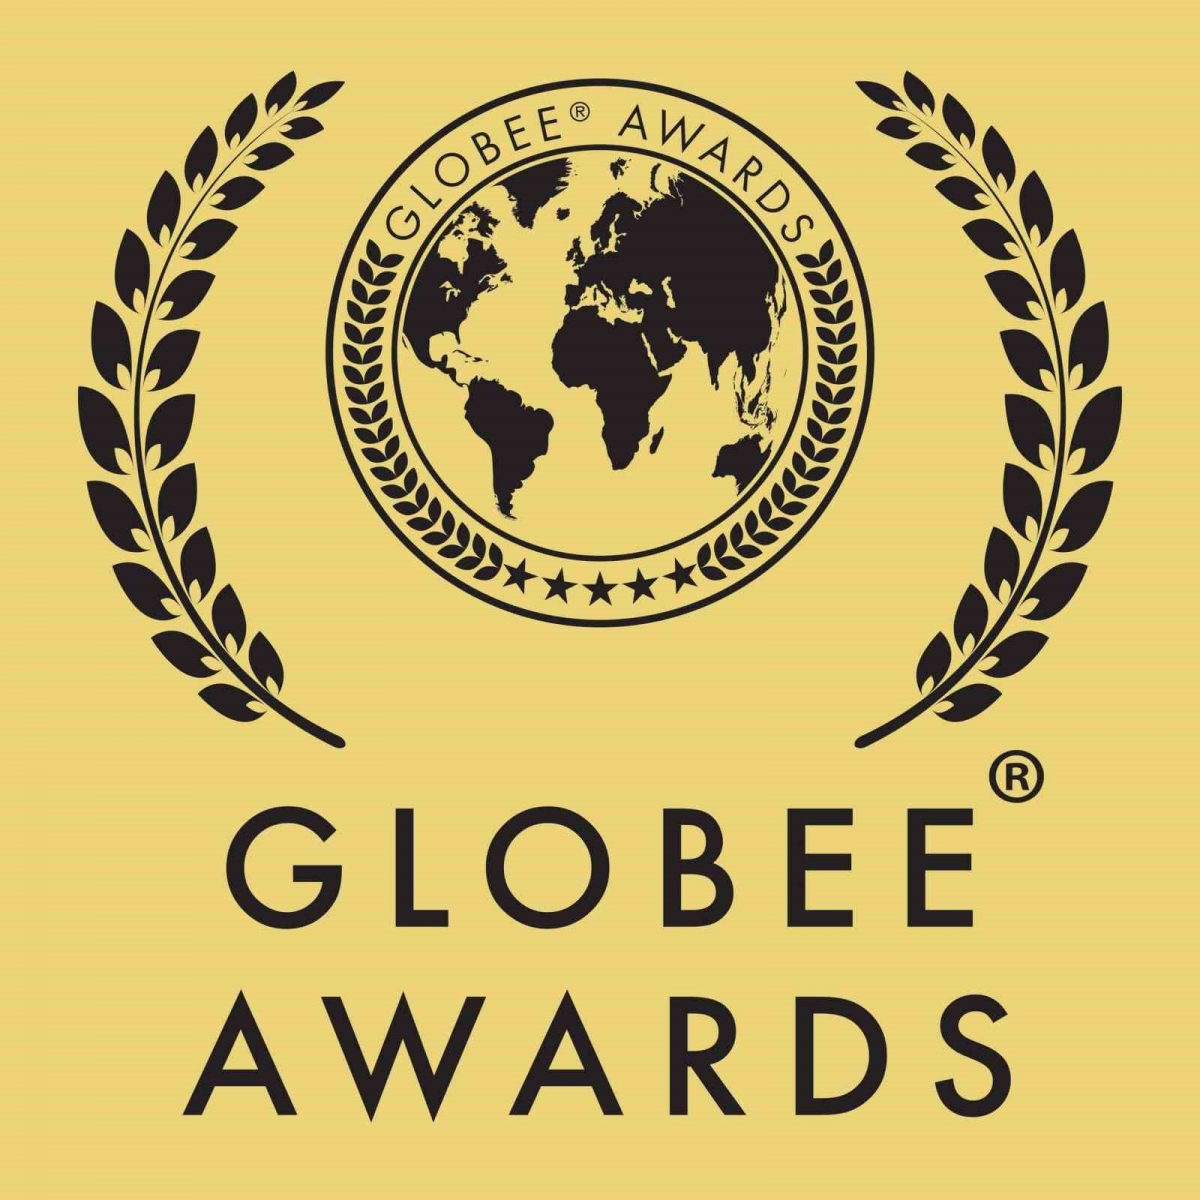 Globee Awards’tan Vestel’e 1 Altın ve 1 Gümüş ödül
